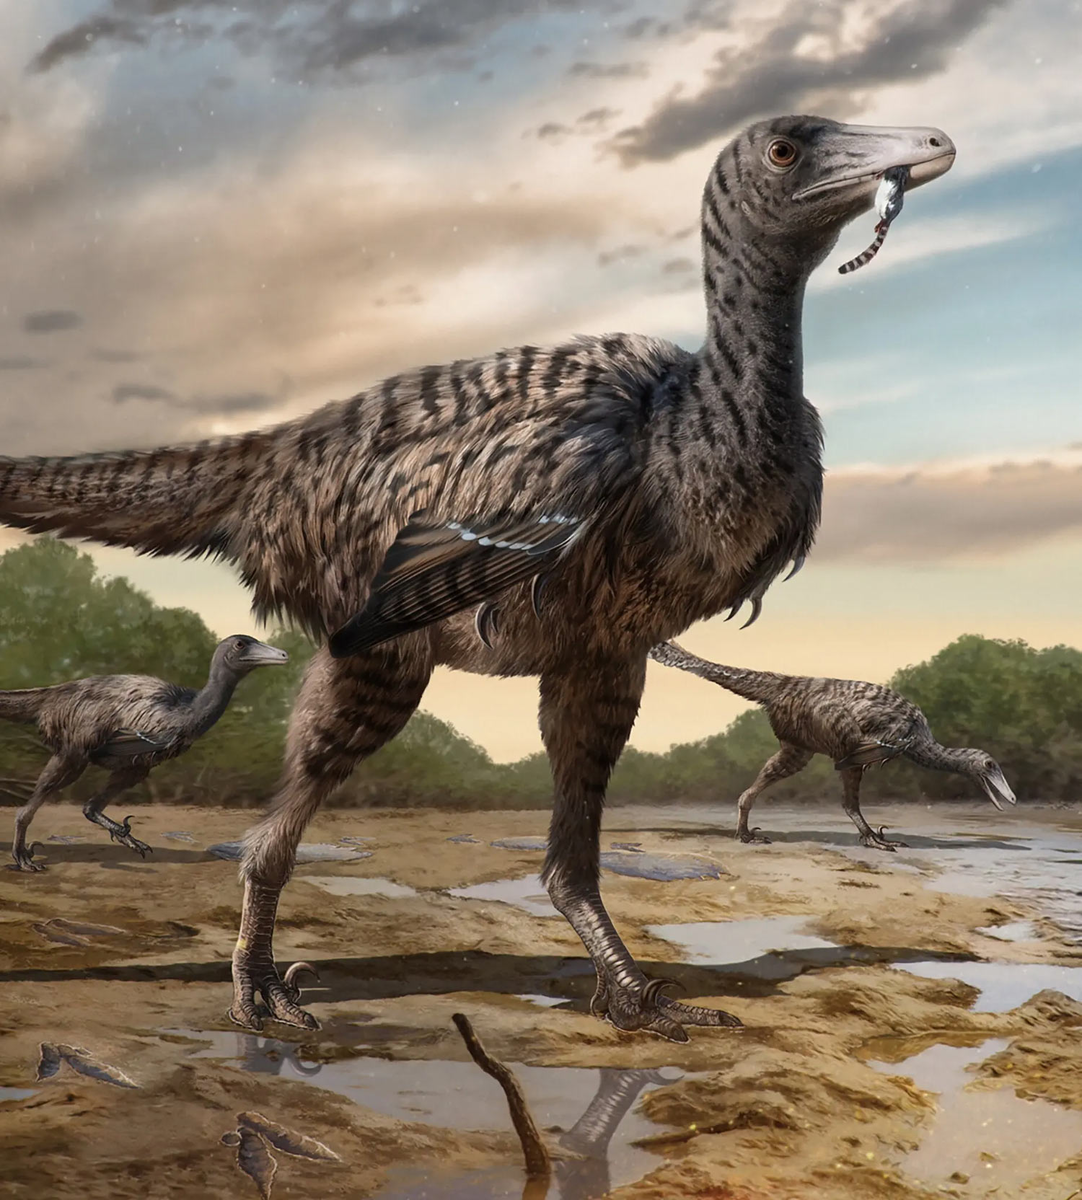 Палеонтологи обнаружили следы динозавра группы троодонтид длиной 5 м в местности Лунсян, в китайской провинции Фуцзянь.